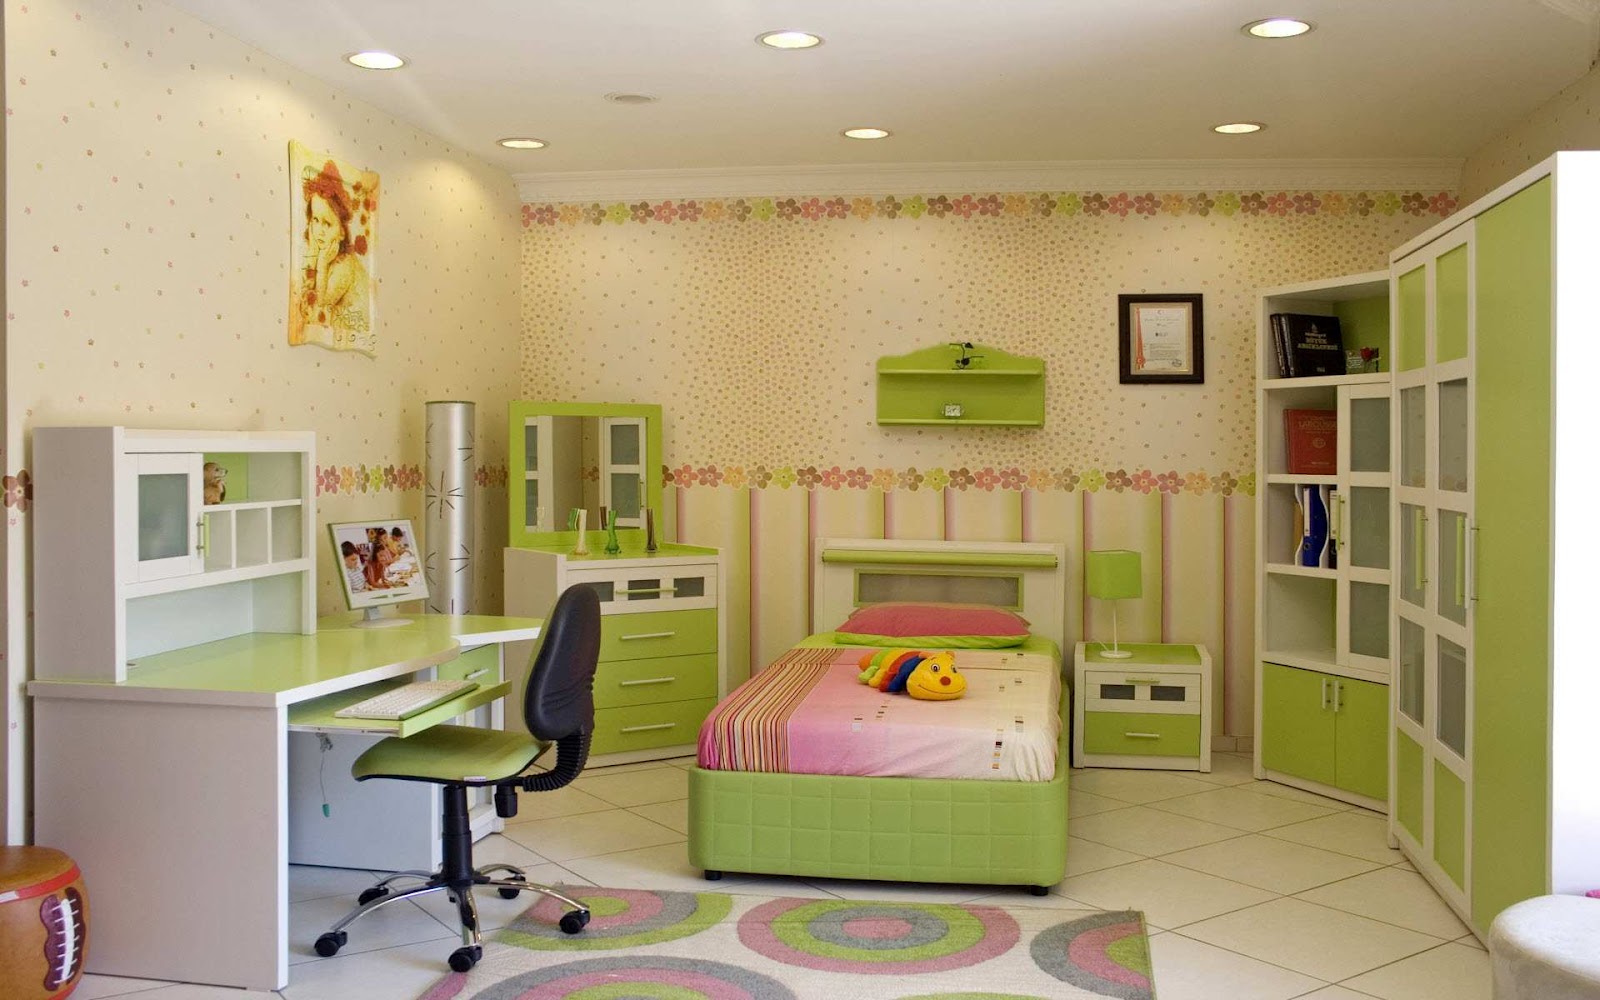 http://2.bp.blogspot.com/-DcwP9UqrRs4/UDySG7H33_I/AAAAAAAAChs/ieQg90vJDd8/s1600/Best-Kids-Room-home-Interior-Designs8.jpg